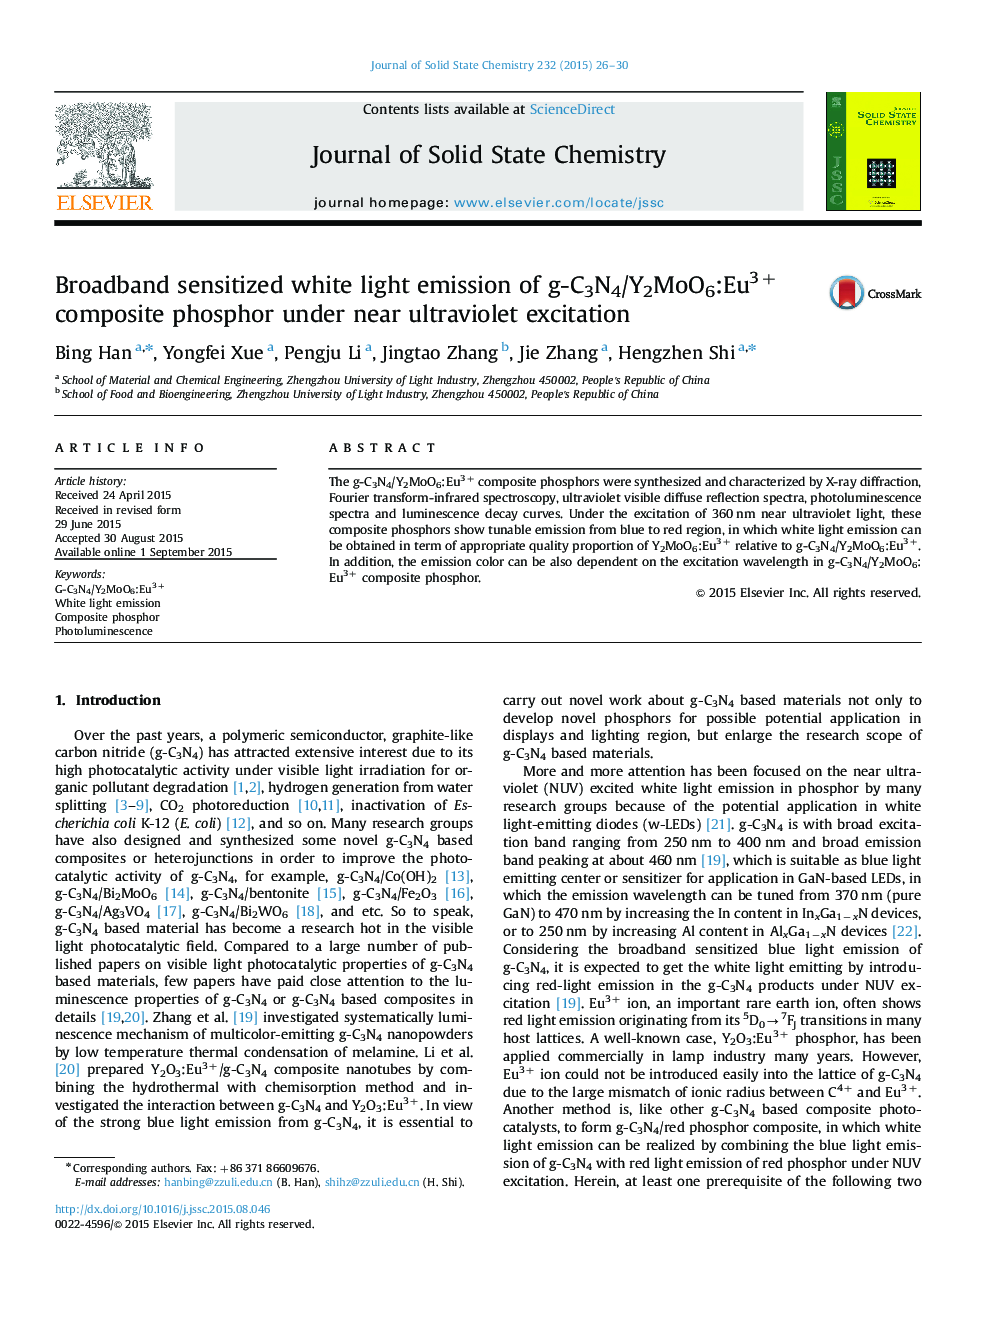 Broadband sensitized white light emission of g-C3N4/Y2MoO6:Eu3+ composite phosphor under near ultraviolet excitation